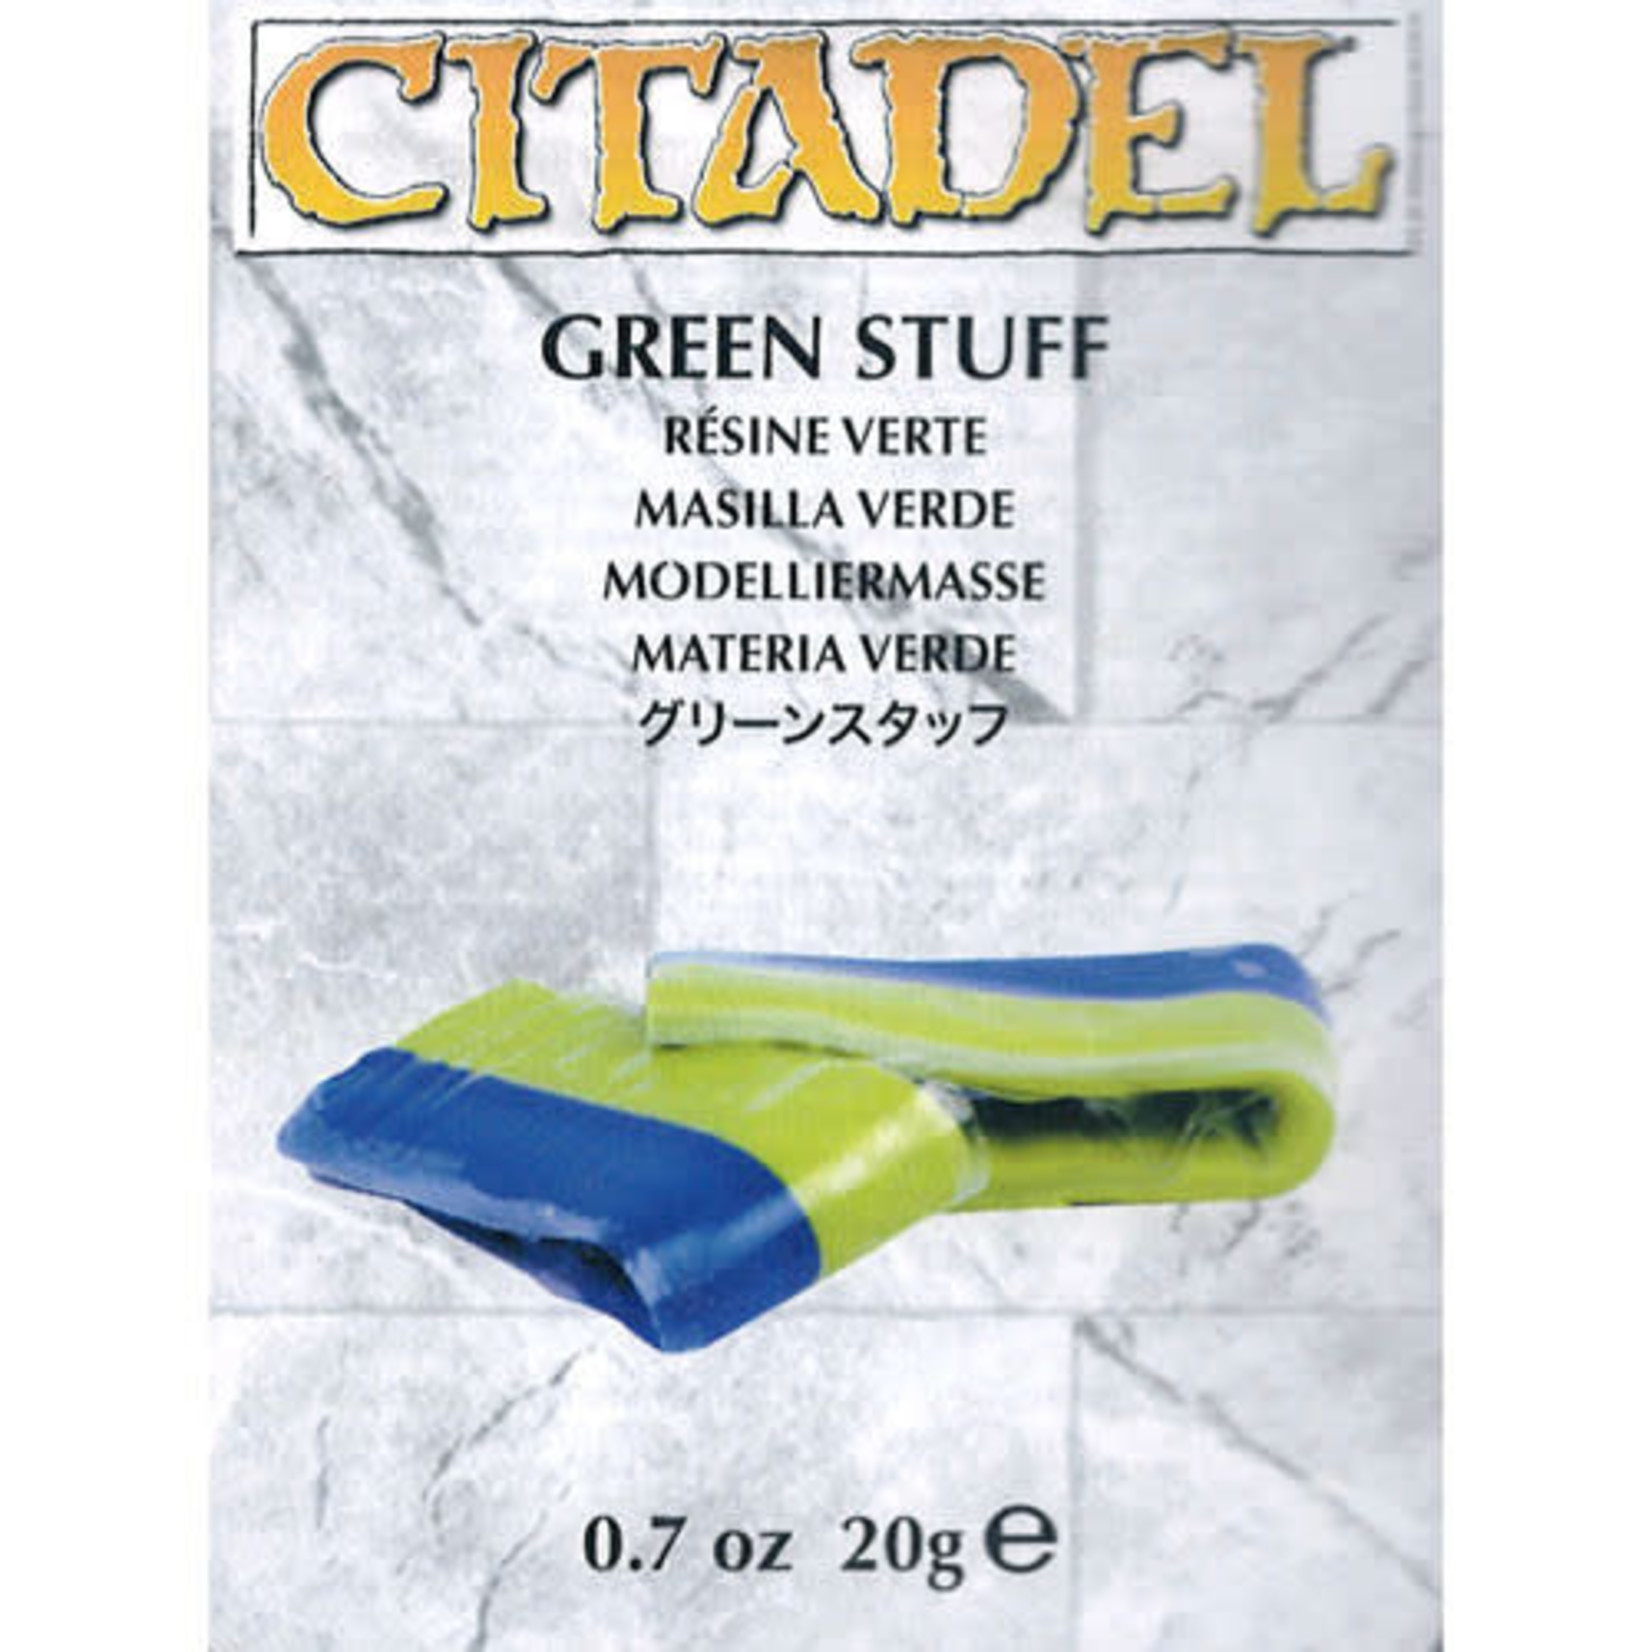 Citadel Green Stuff